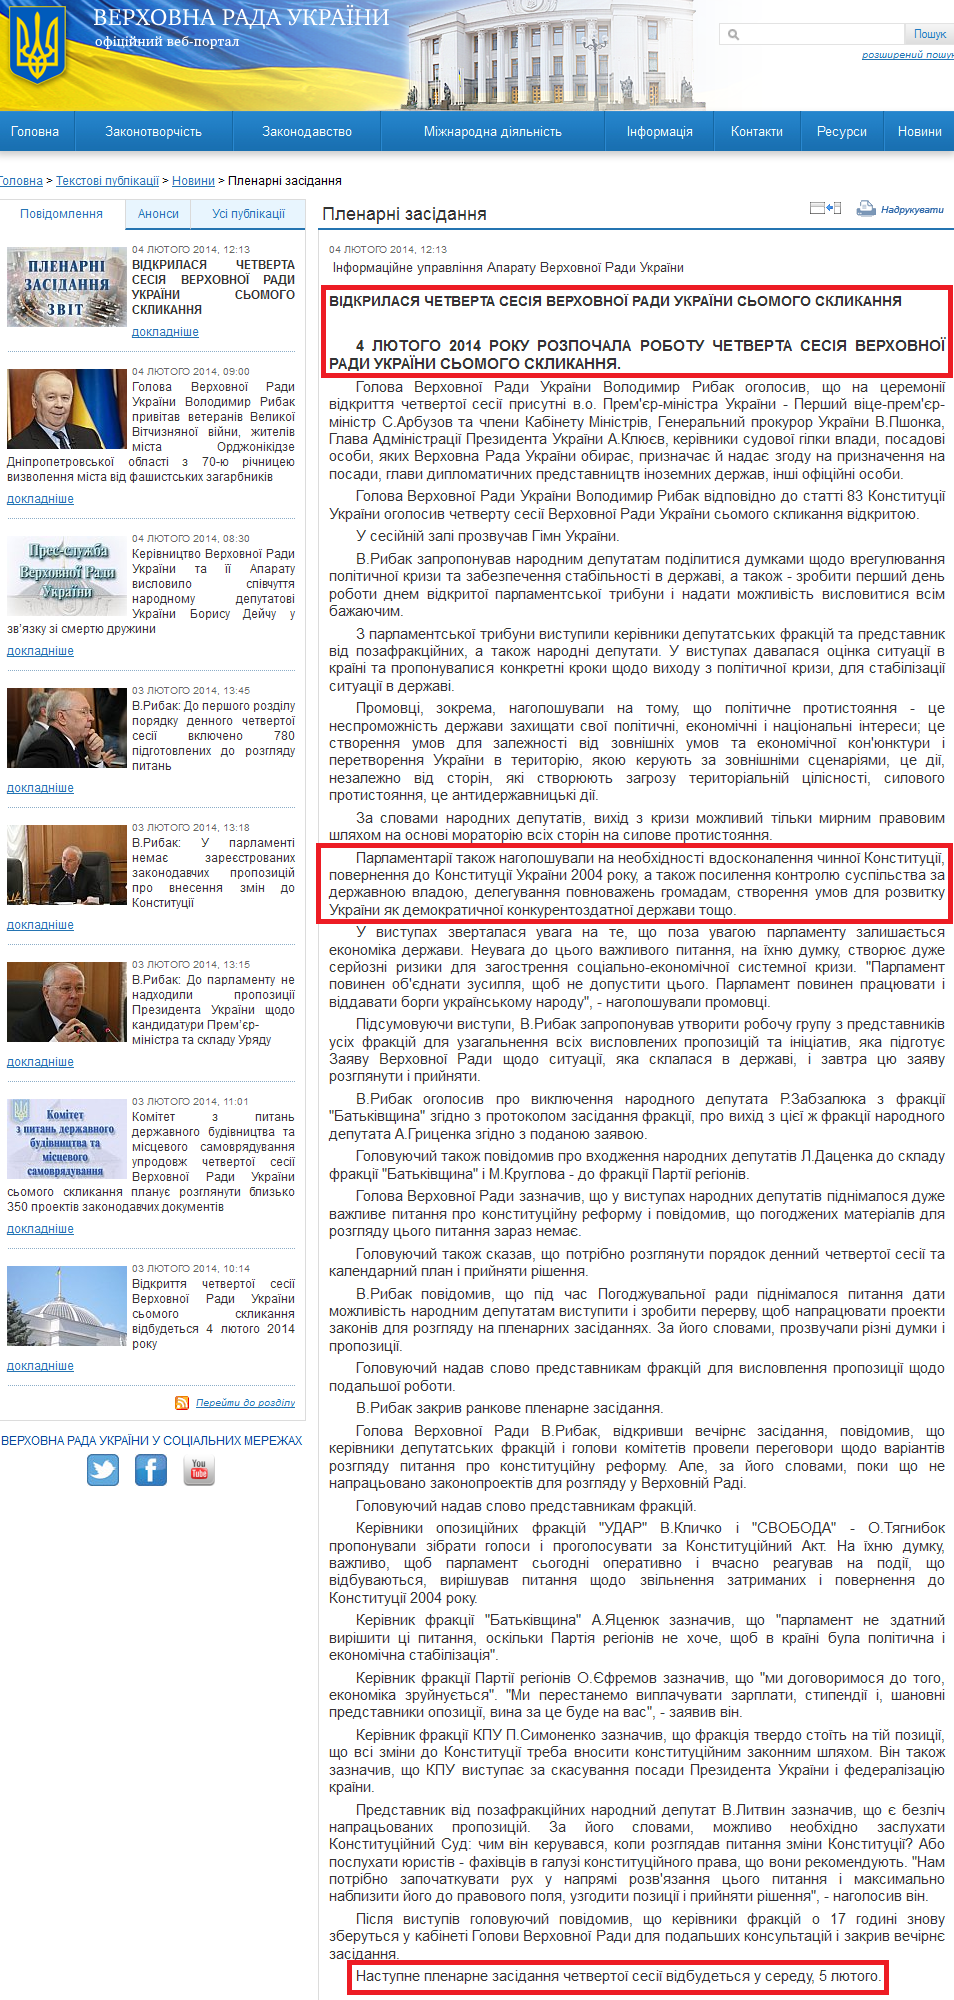 http://iportal.rada.gov.ua/news/Novyny/Plenarni_zasidannya/87506.html